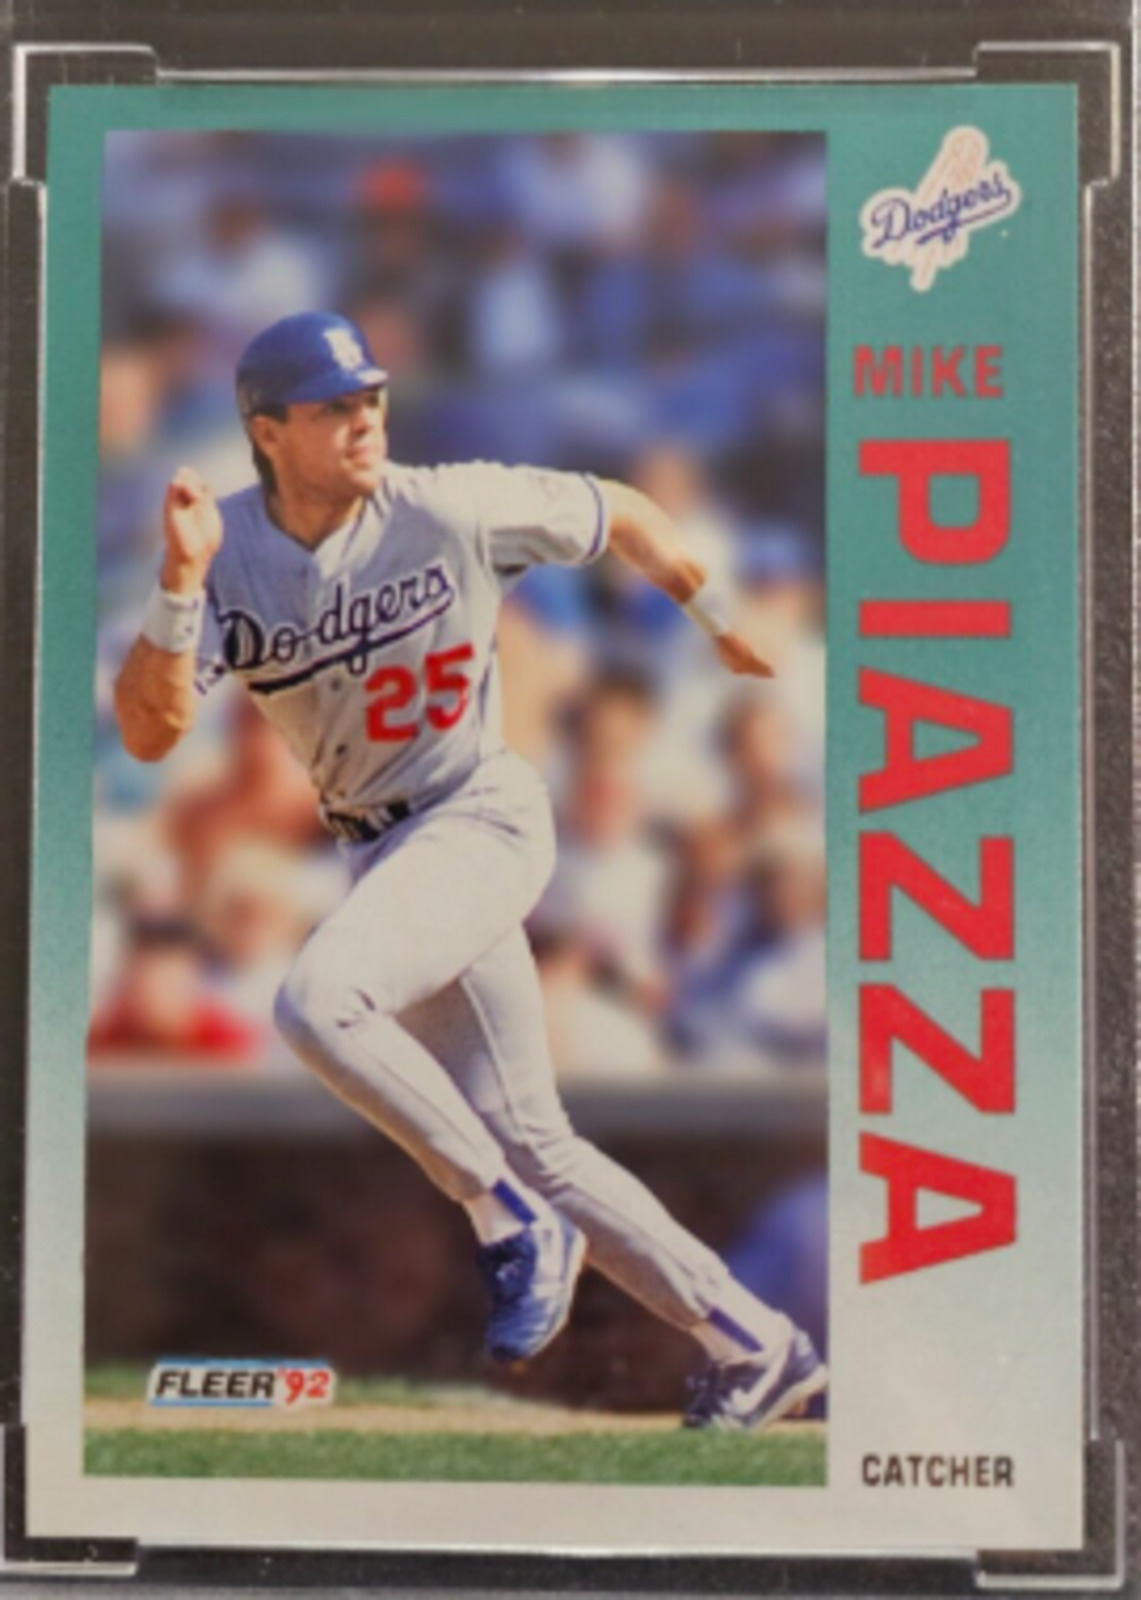 1992 Fleer Update Mike Piazza rookie card